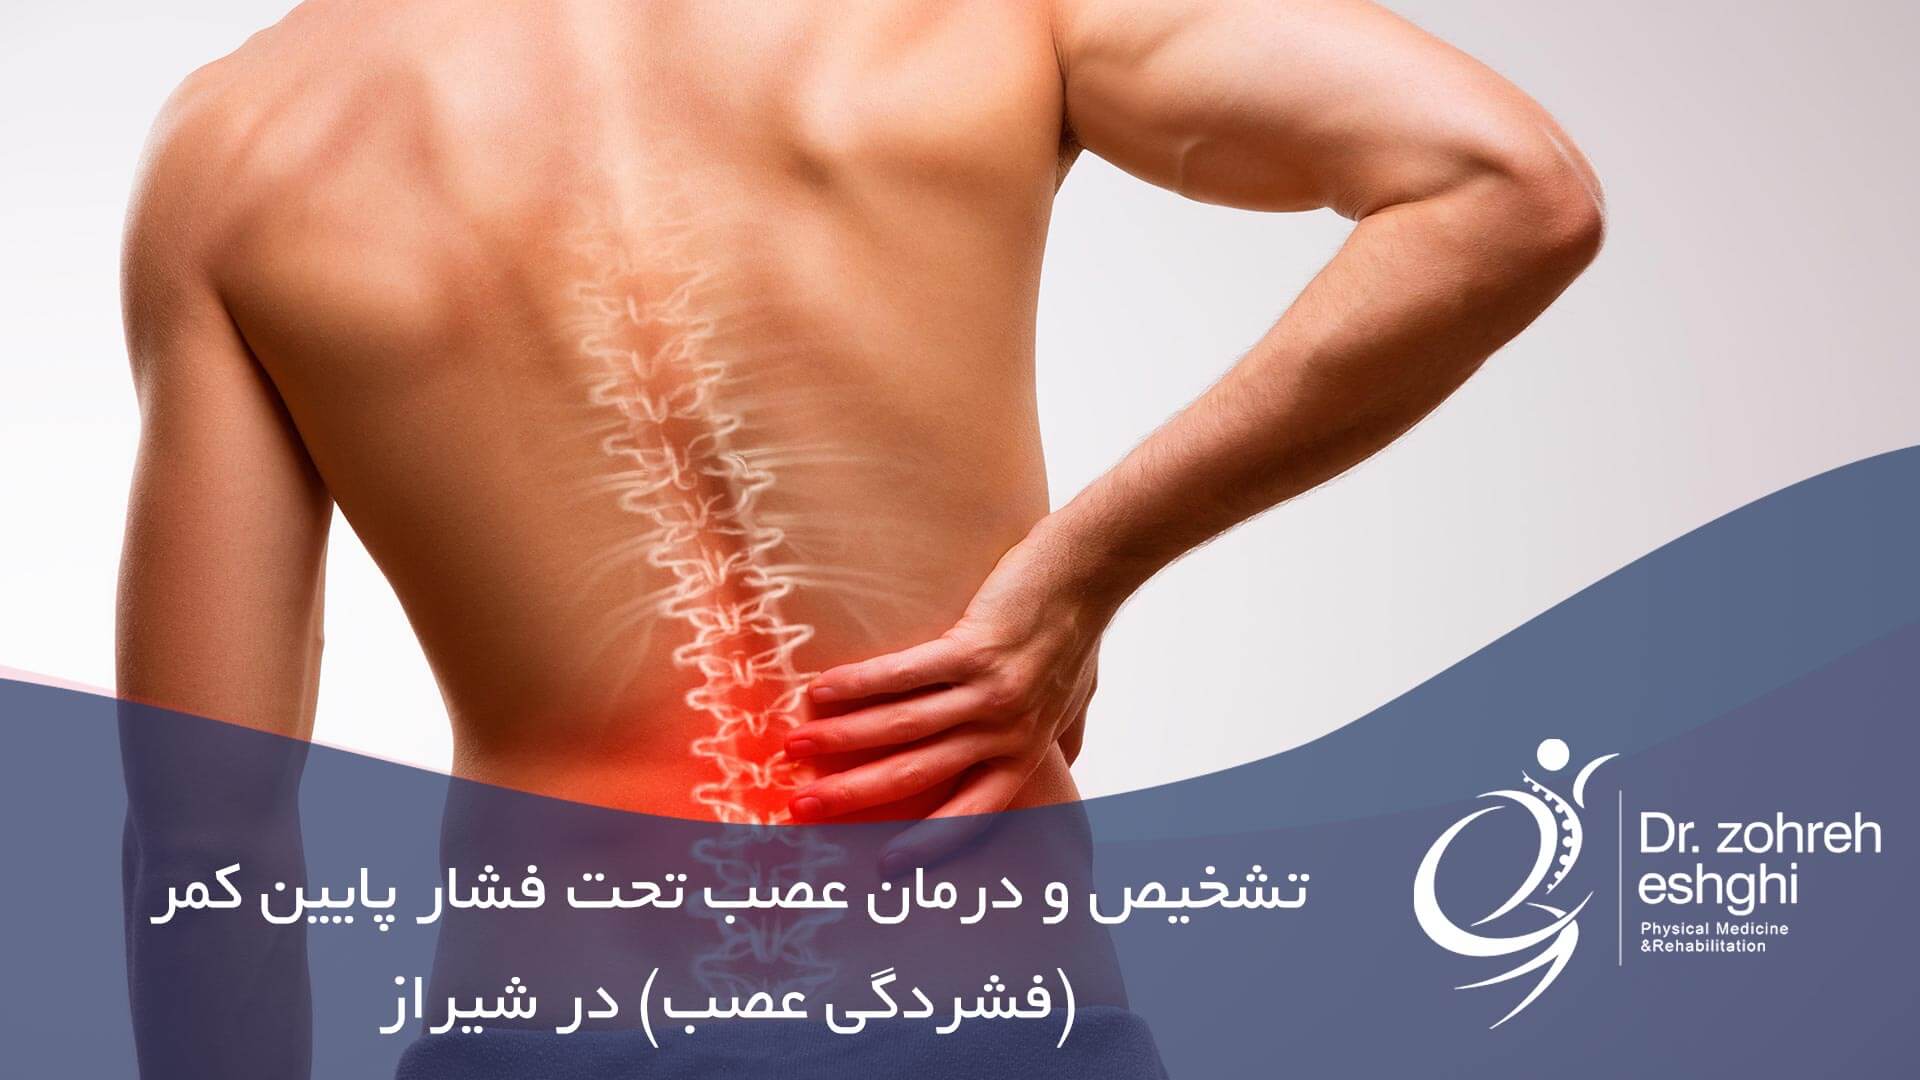 تشخیص و درمان عصب تحت فشار پایین کمر (فشردگی عصب) در شیراز